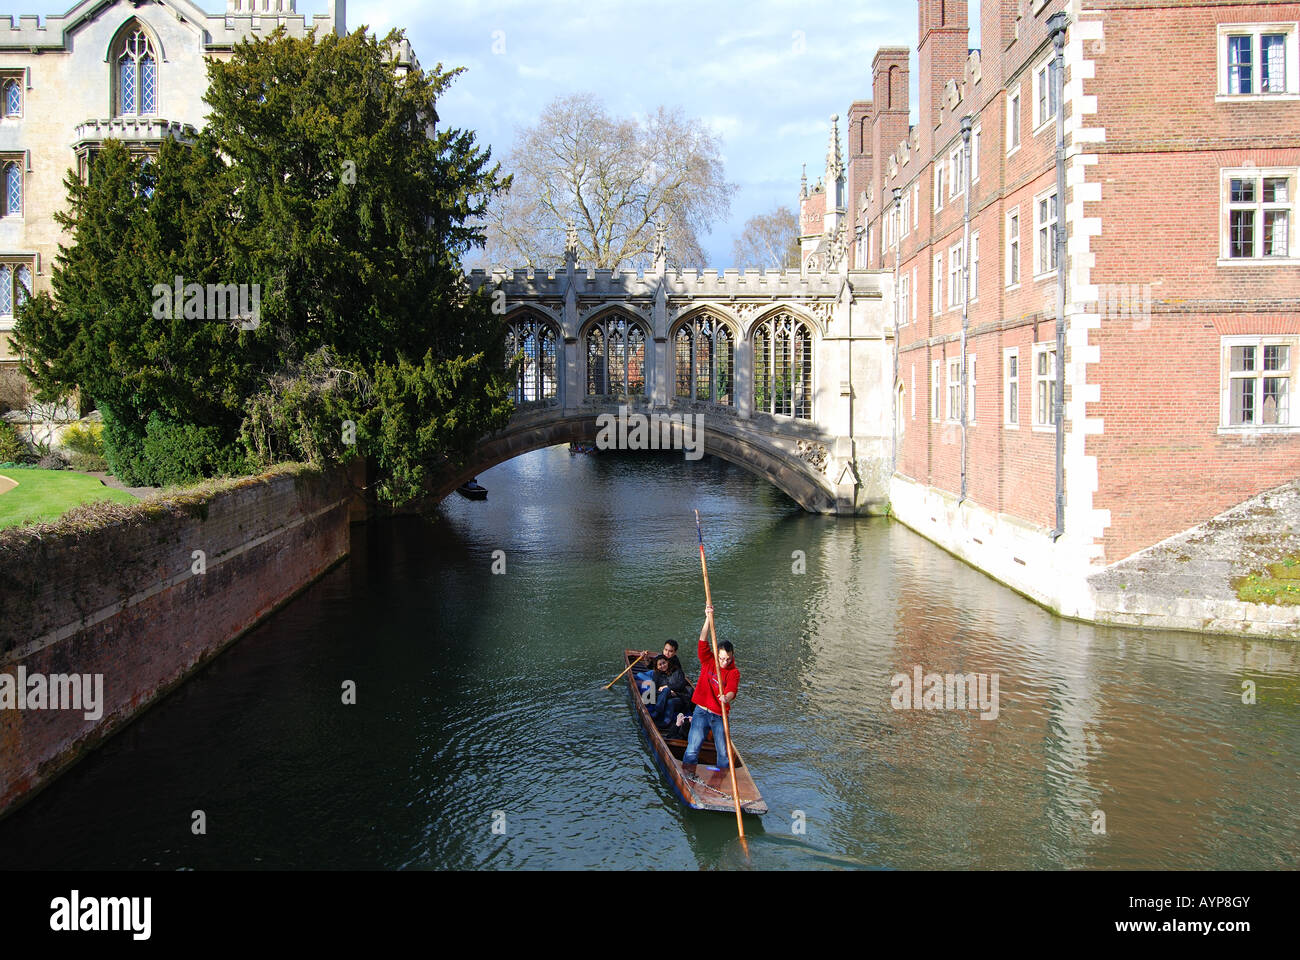 Barques sur la rivière Cam, le Pont des Soupirs, St John's College, Cambridge, Cambridgeshire, Angleterre, Royaume-Uni Banque D'Images